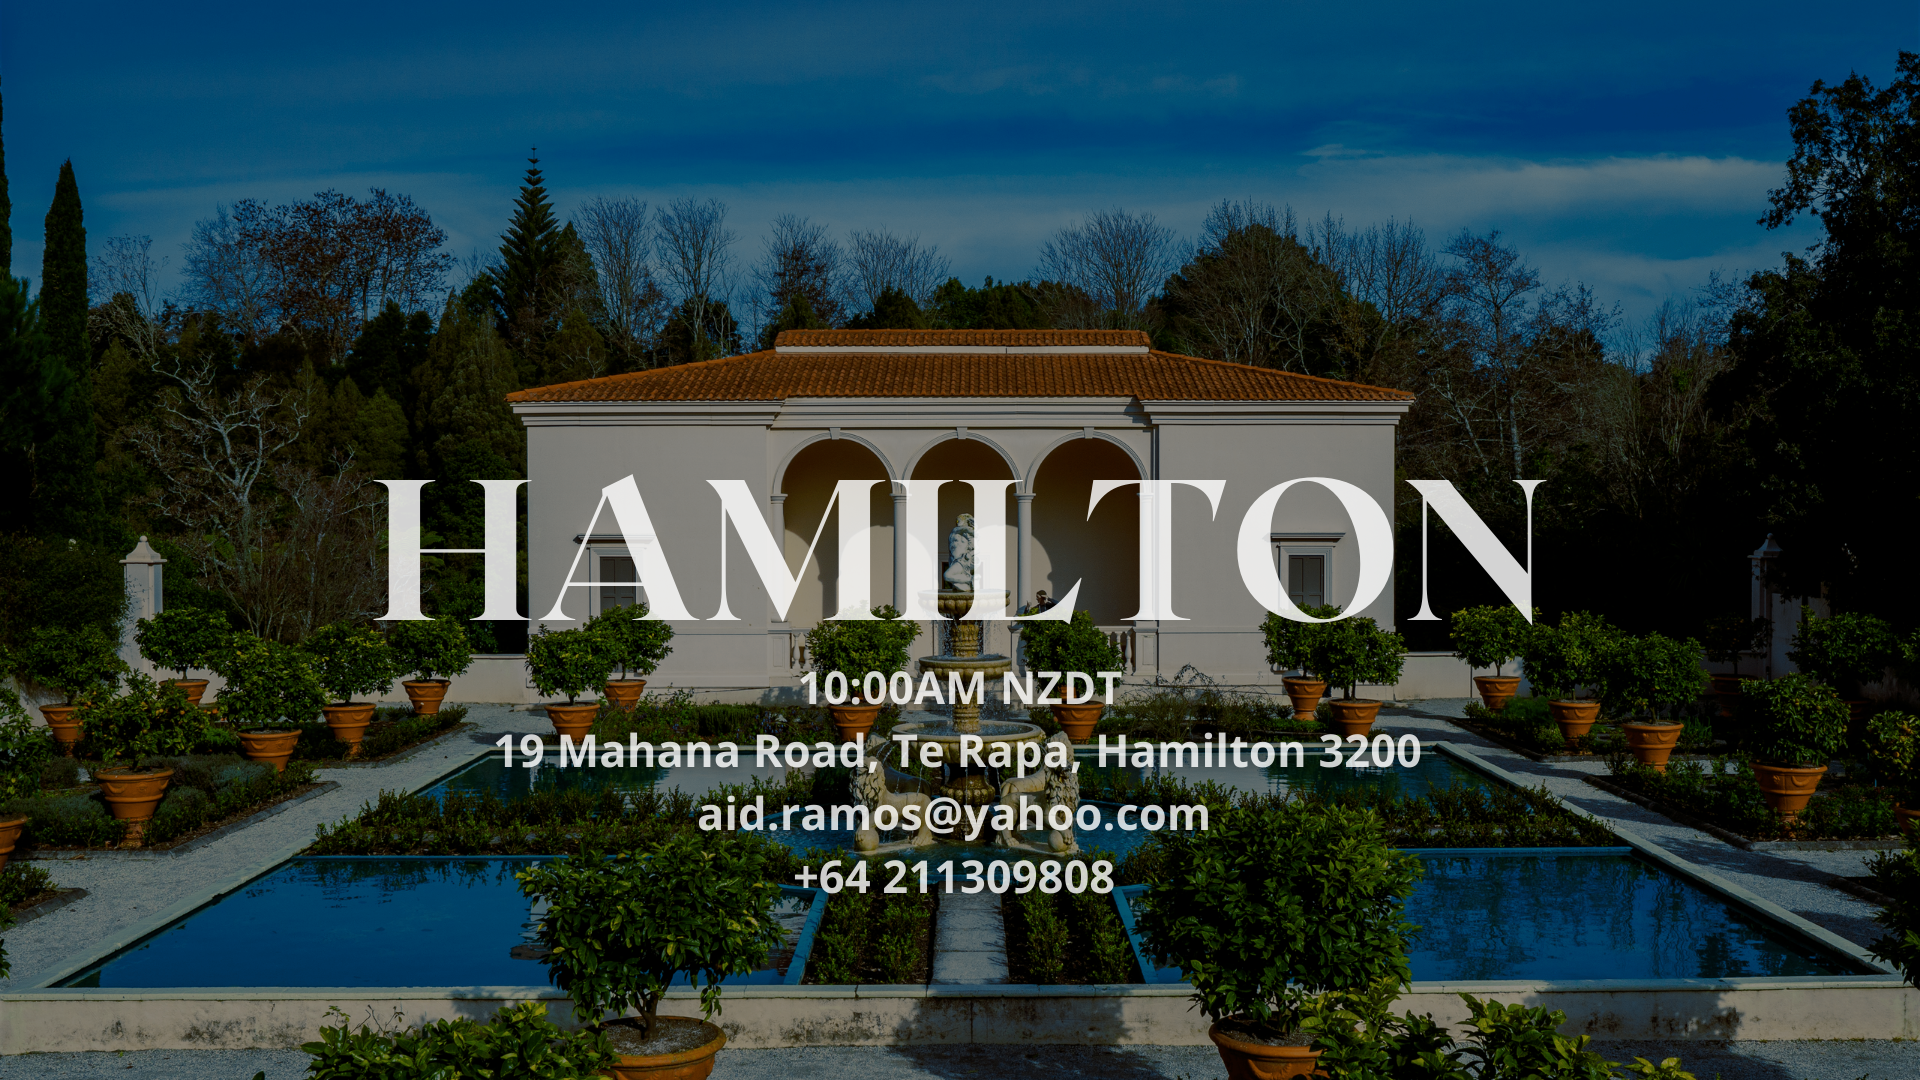 Hamilton Main image